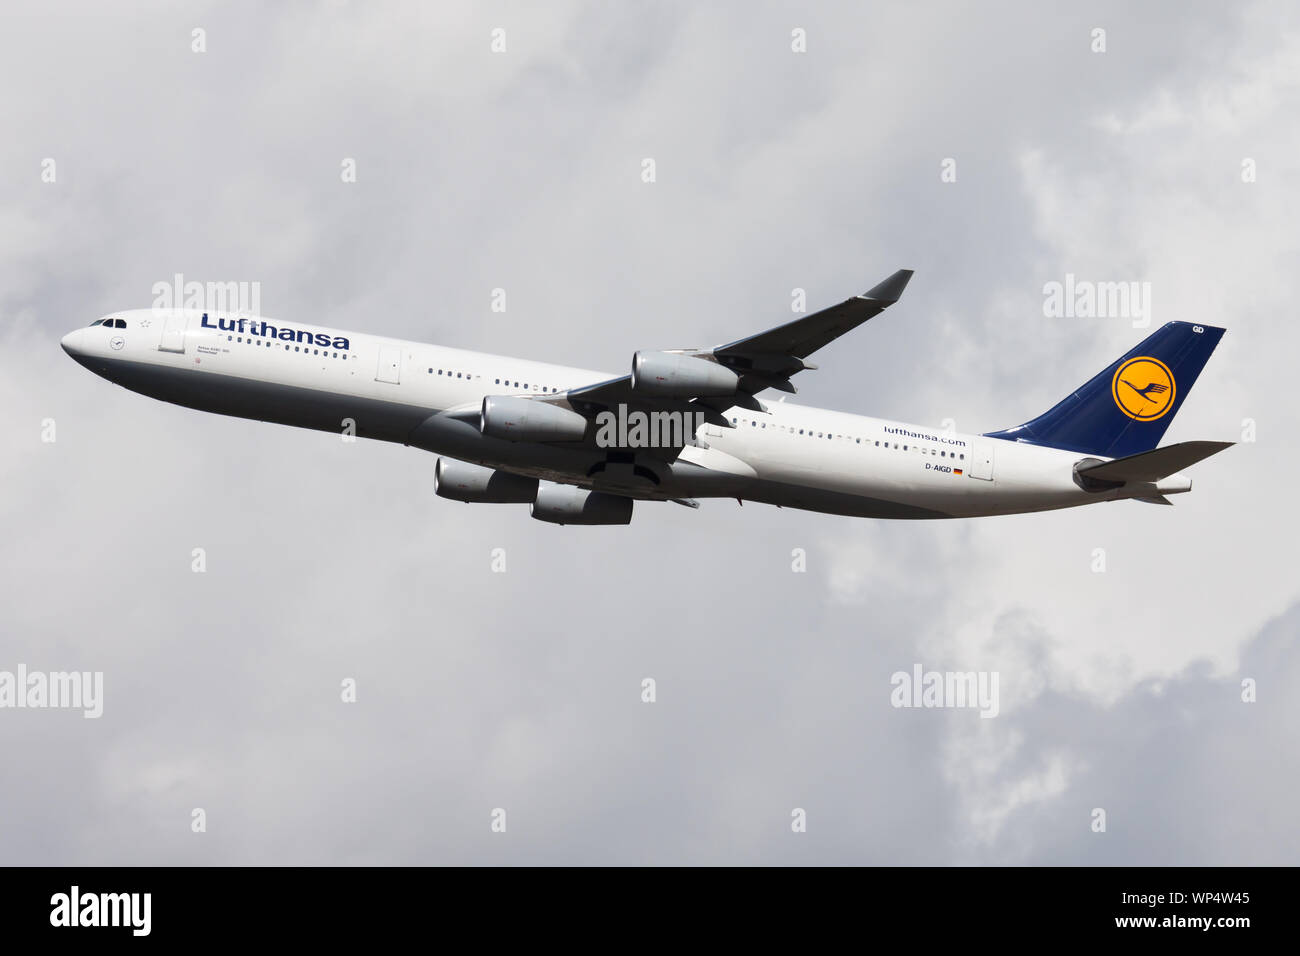 A343 -Fotos und -Bildmaterial in hoher Auflösung – Alamy